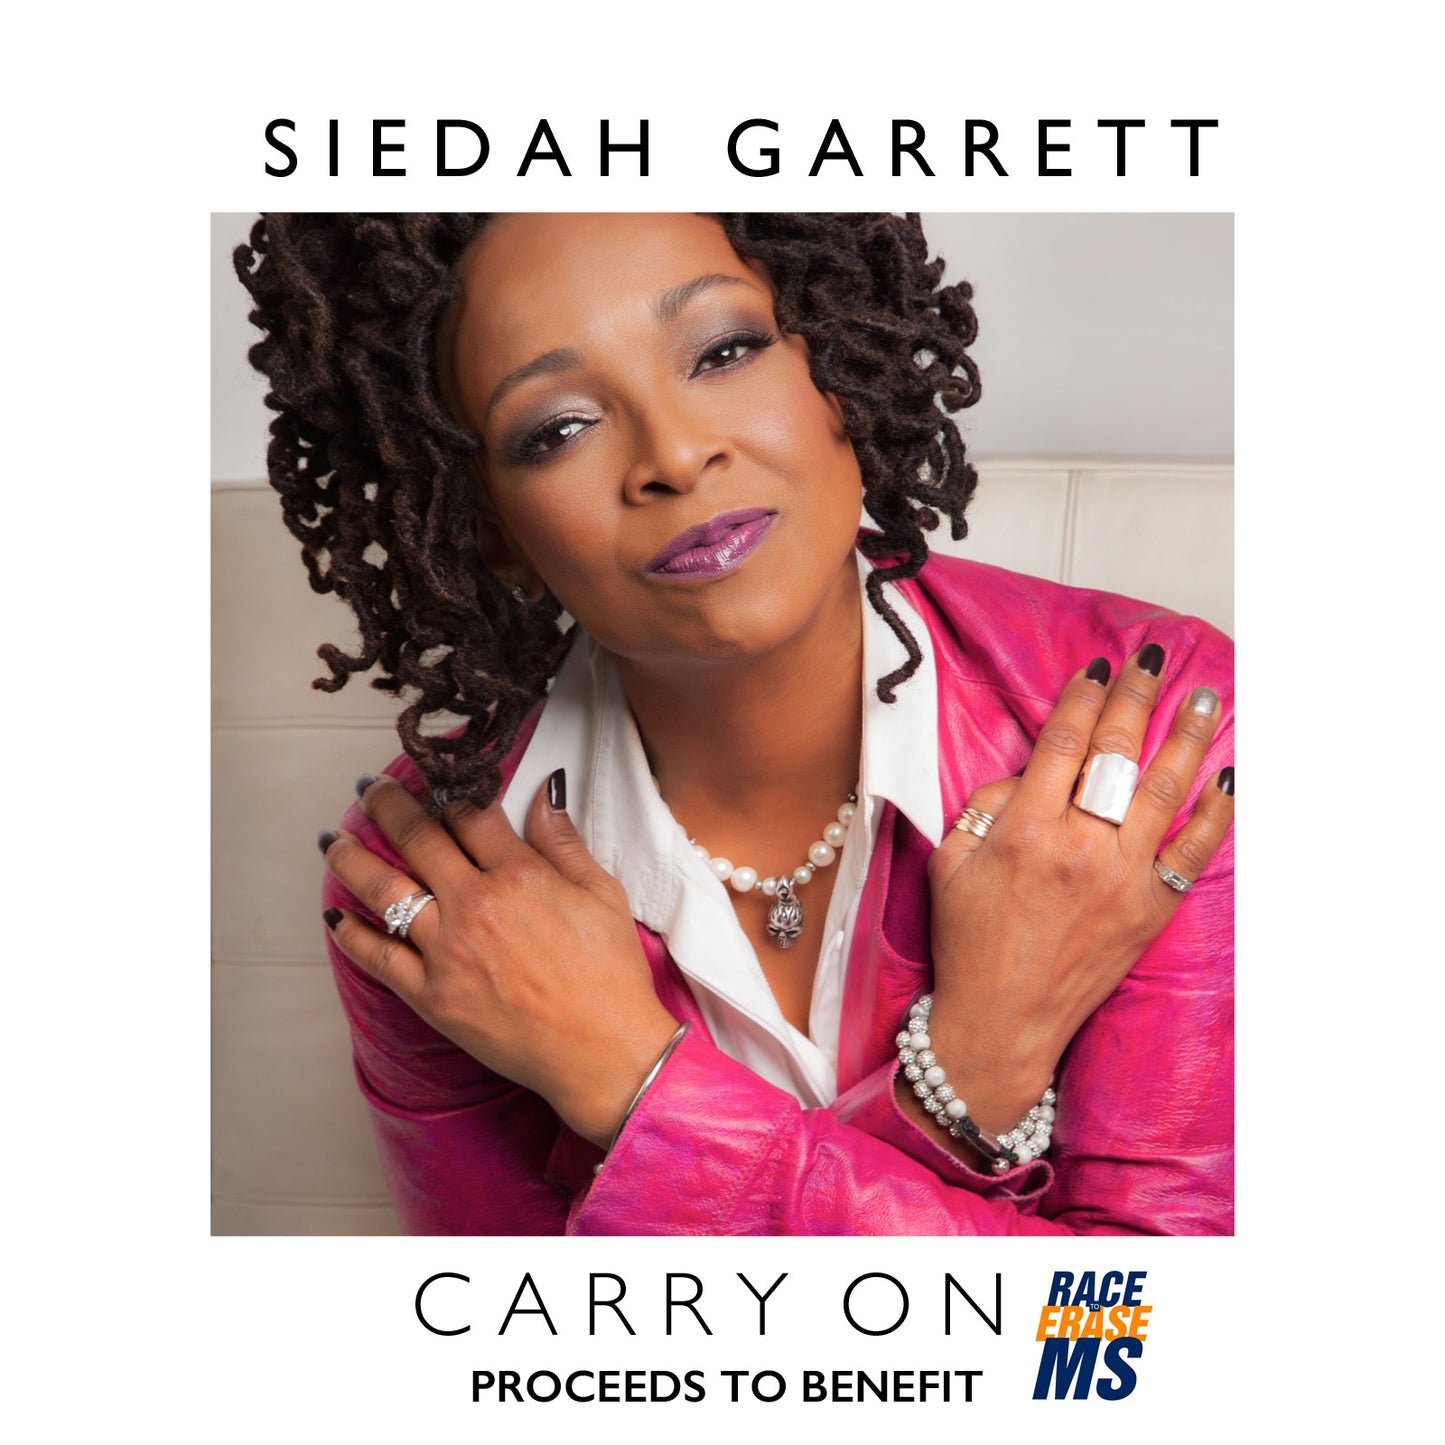 "Carry On" by Siedah Garrett